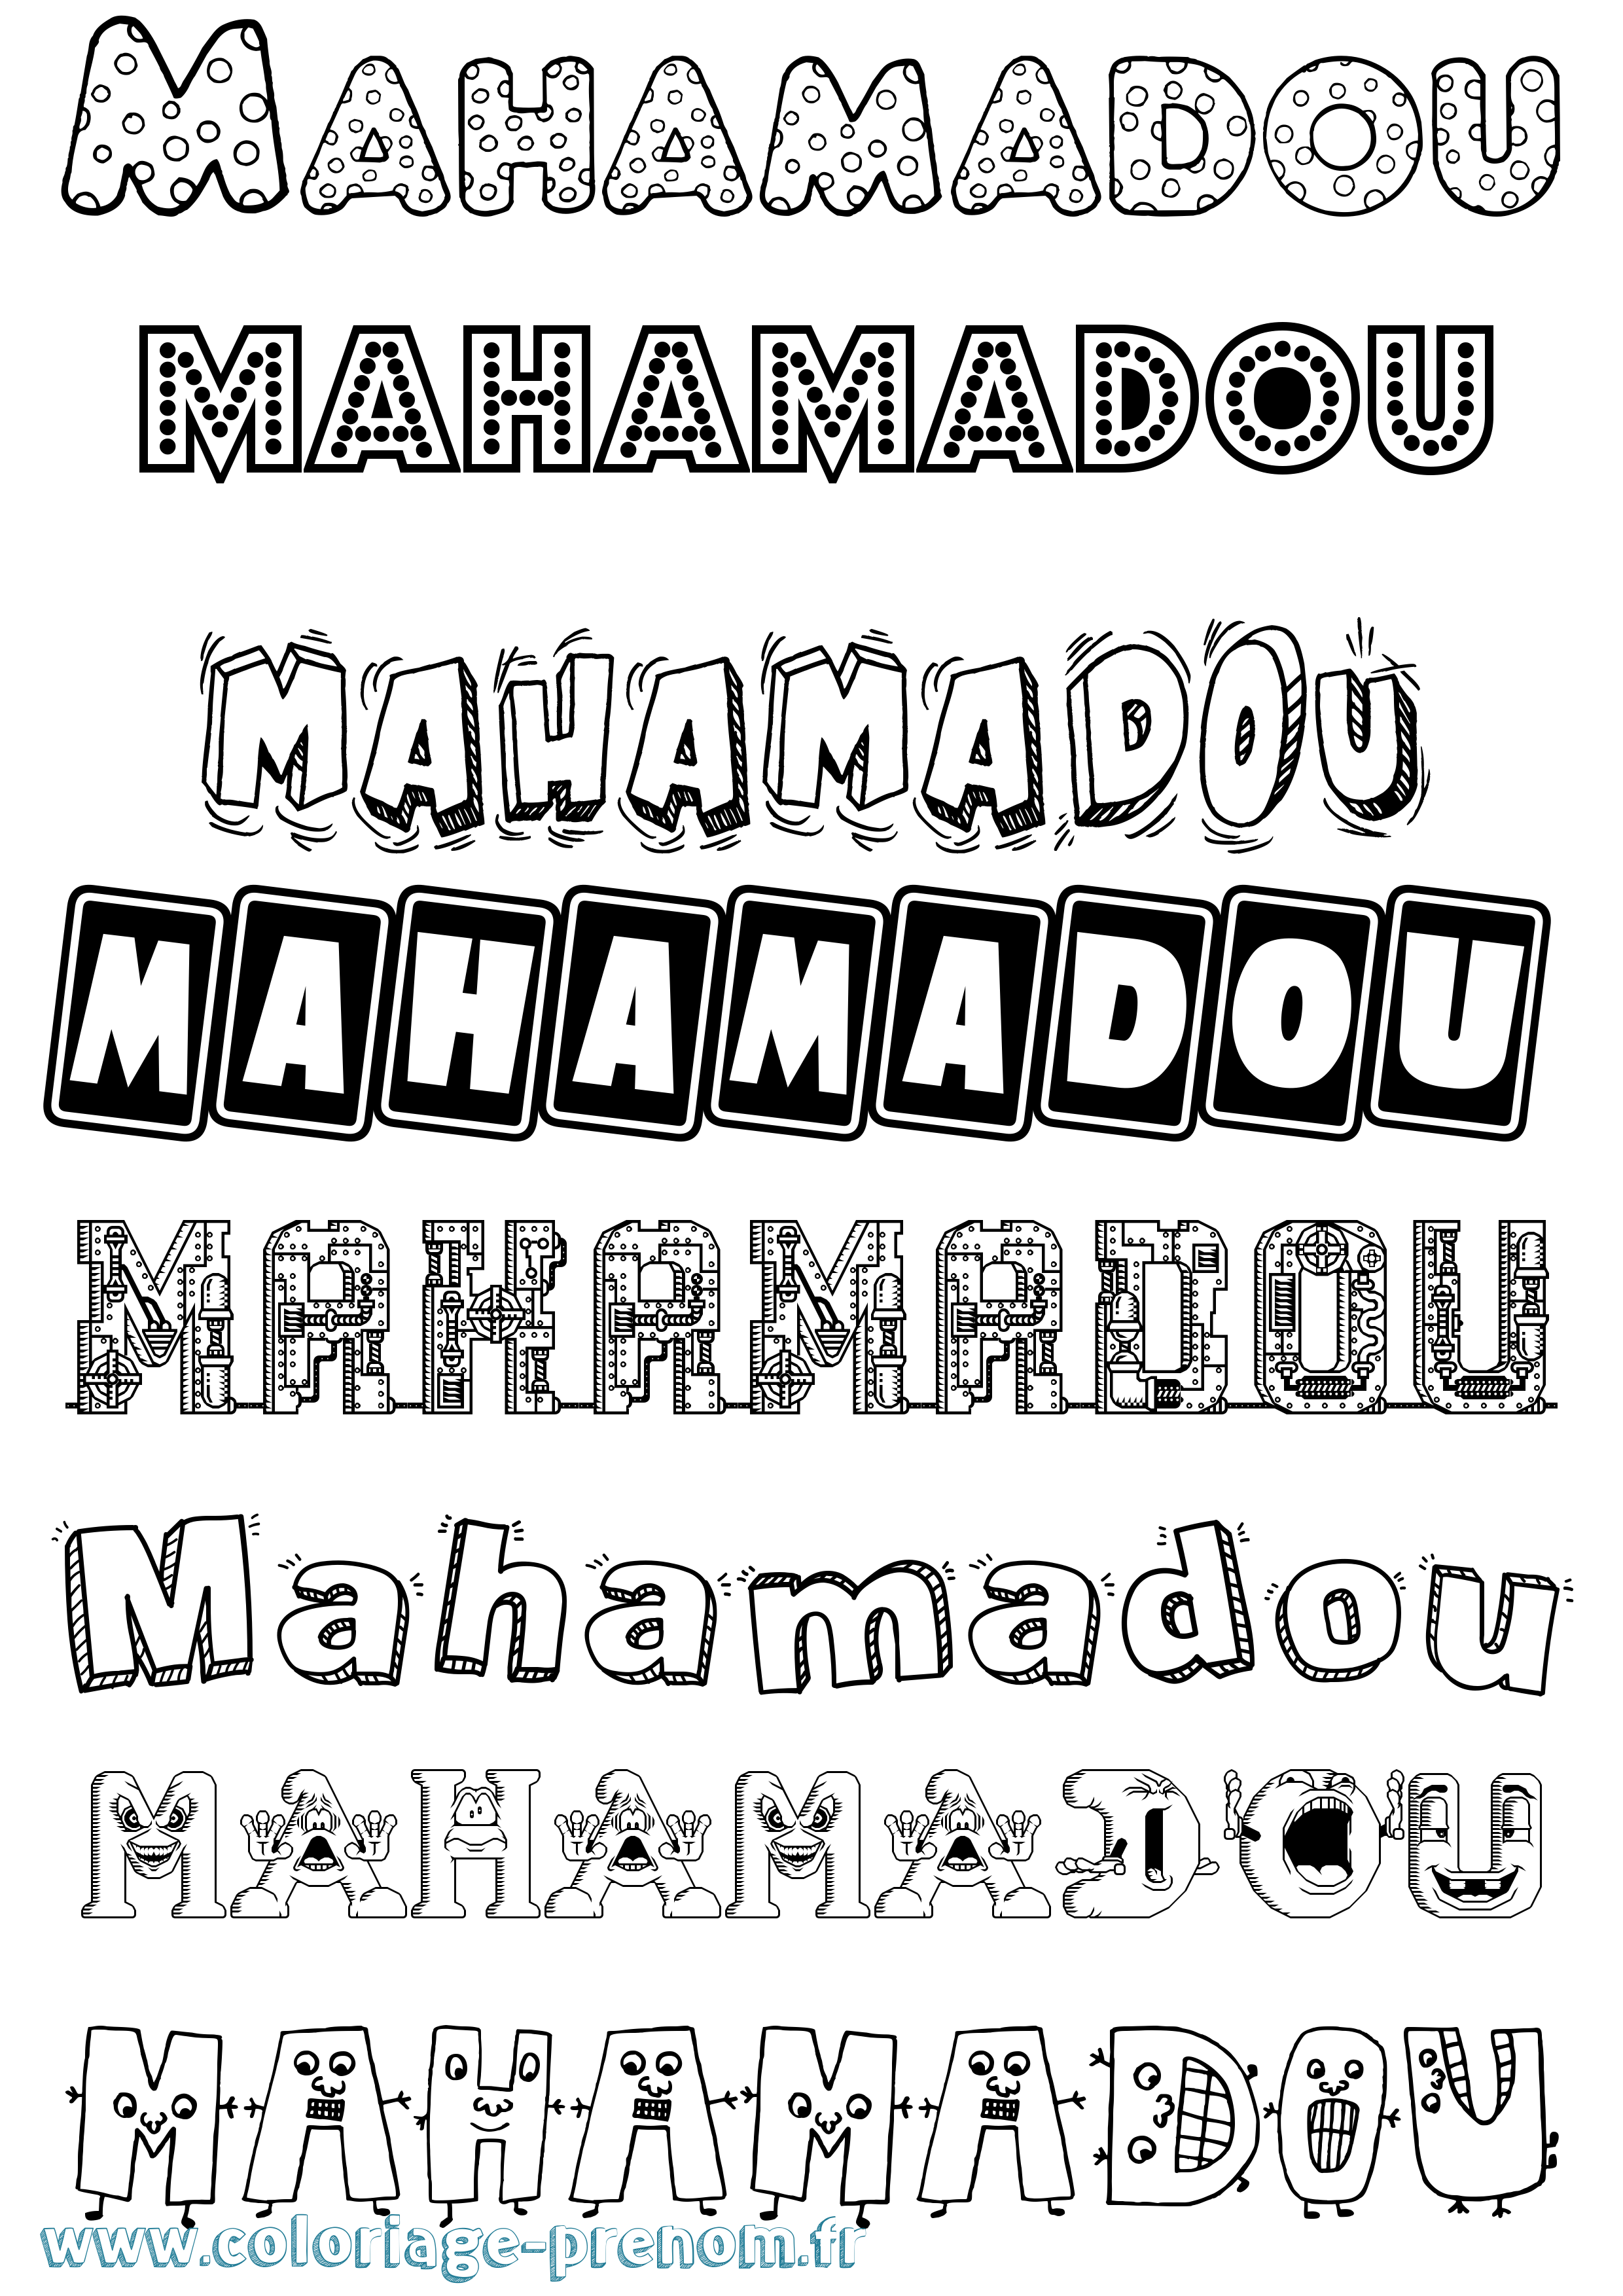 Coloriage prénom Mahamadou